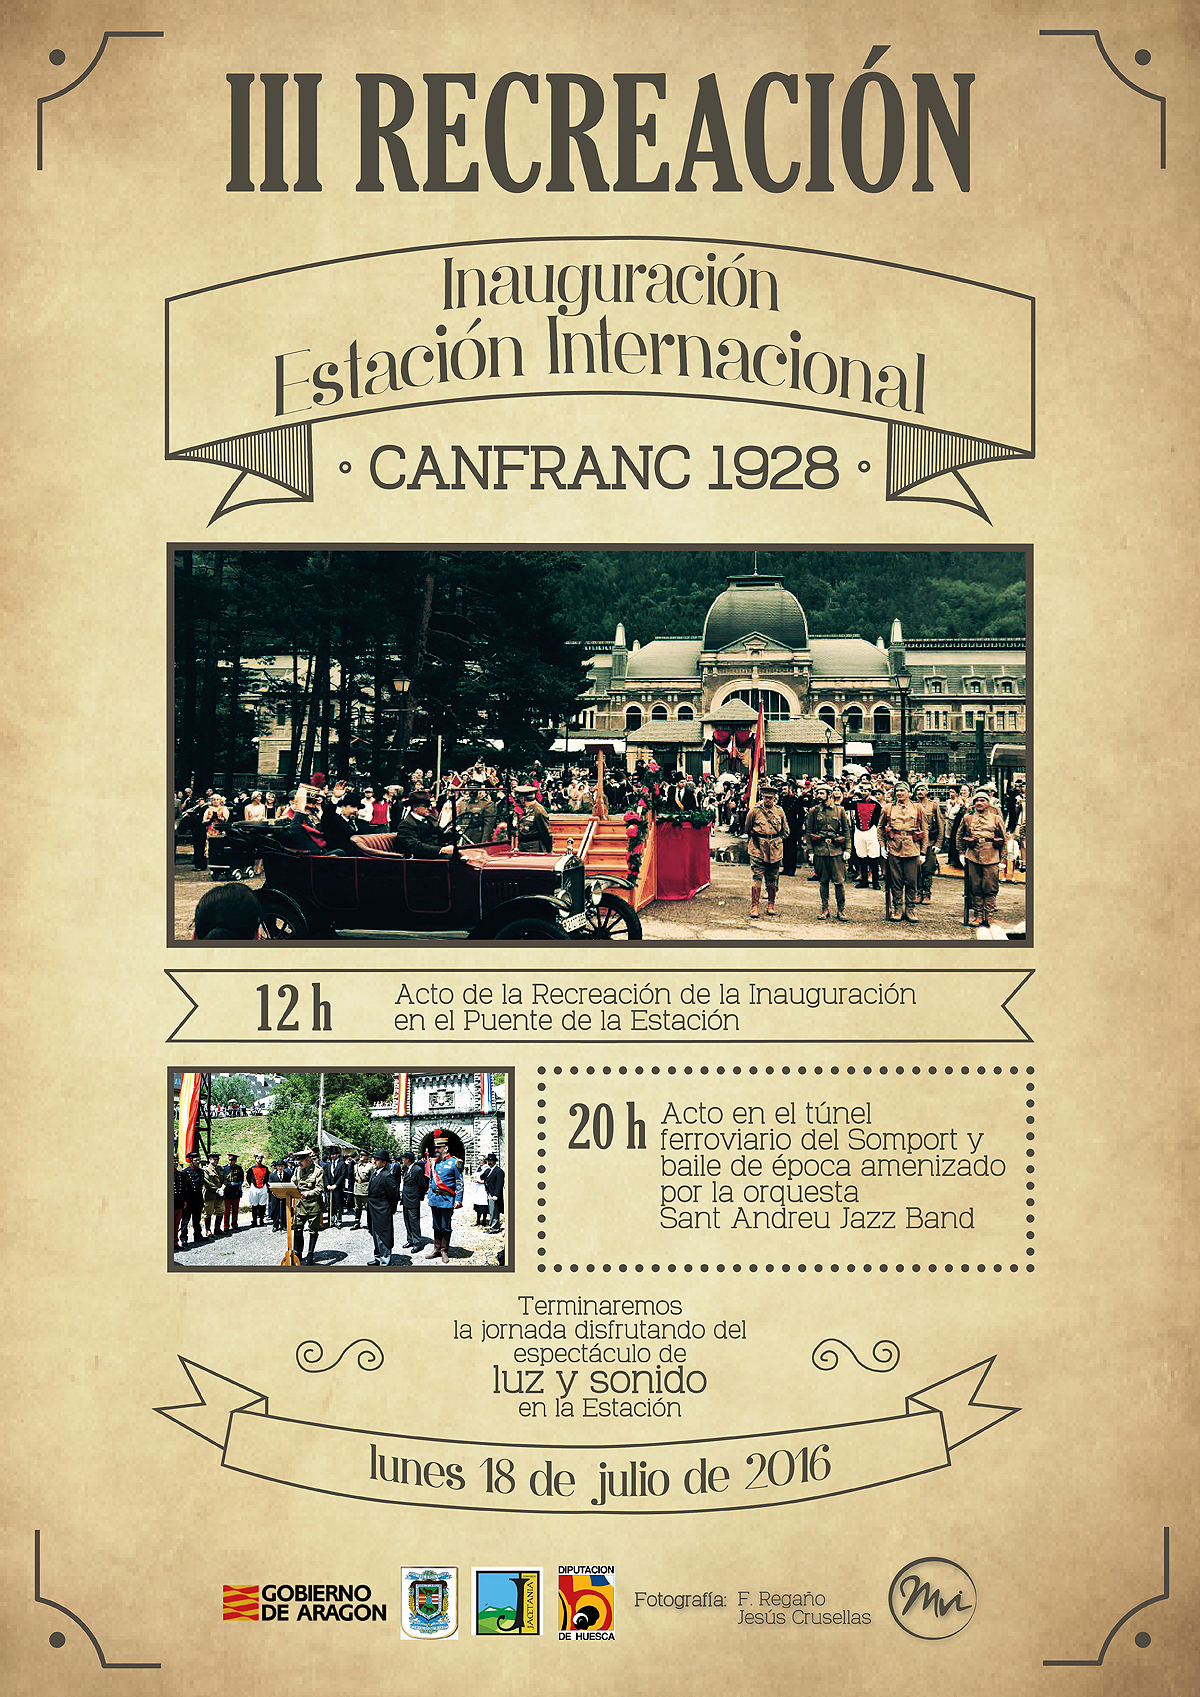 Cartel de la Recreación de la inauguración de la Estación internacional de Canfranc